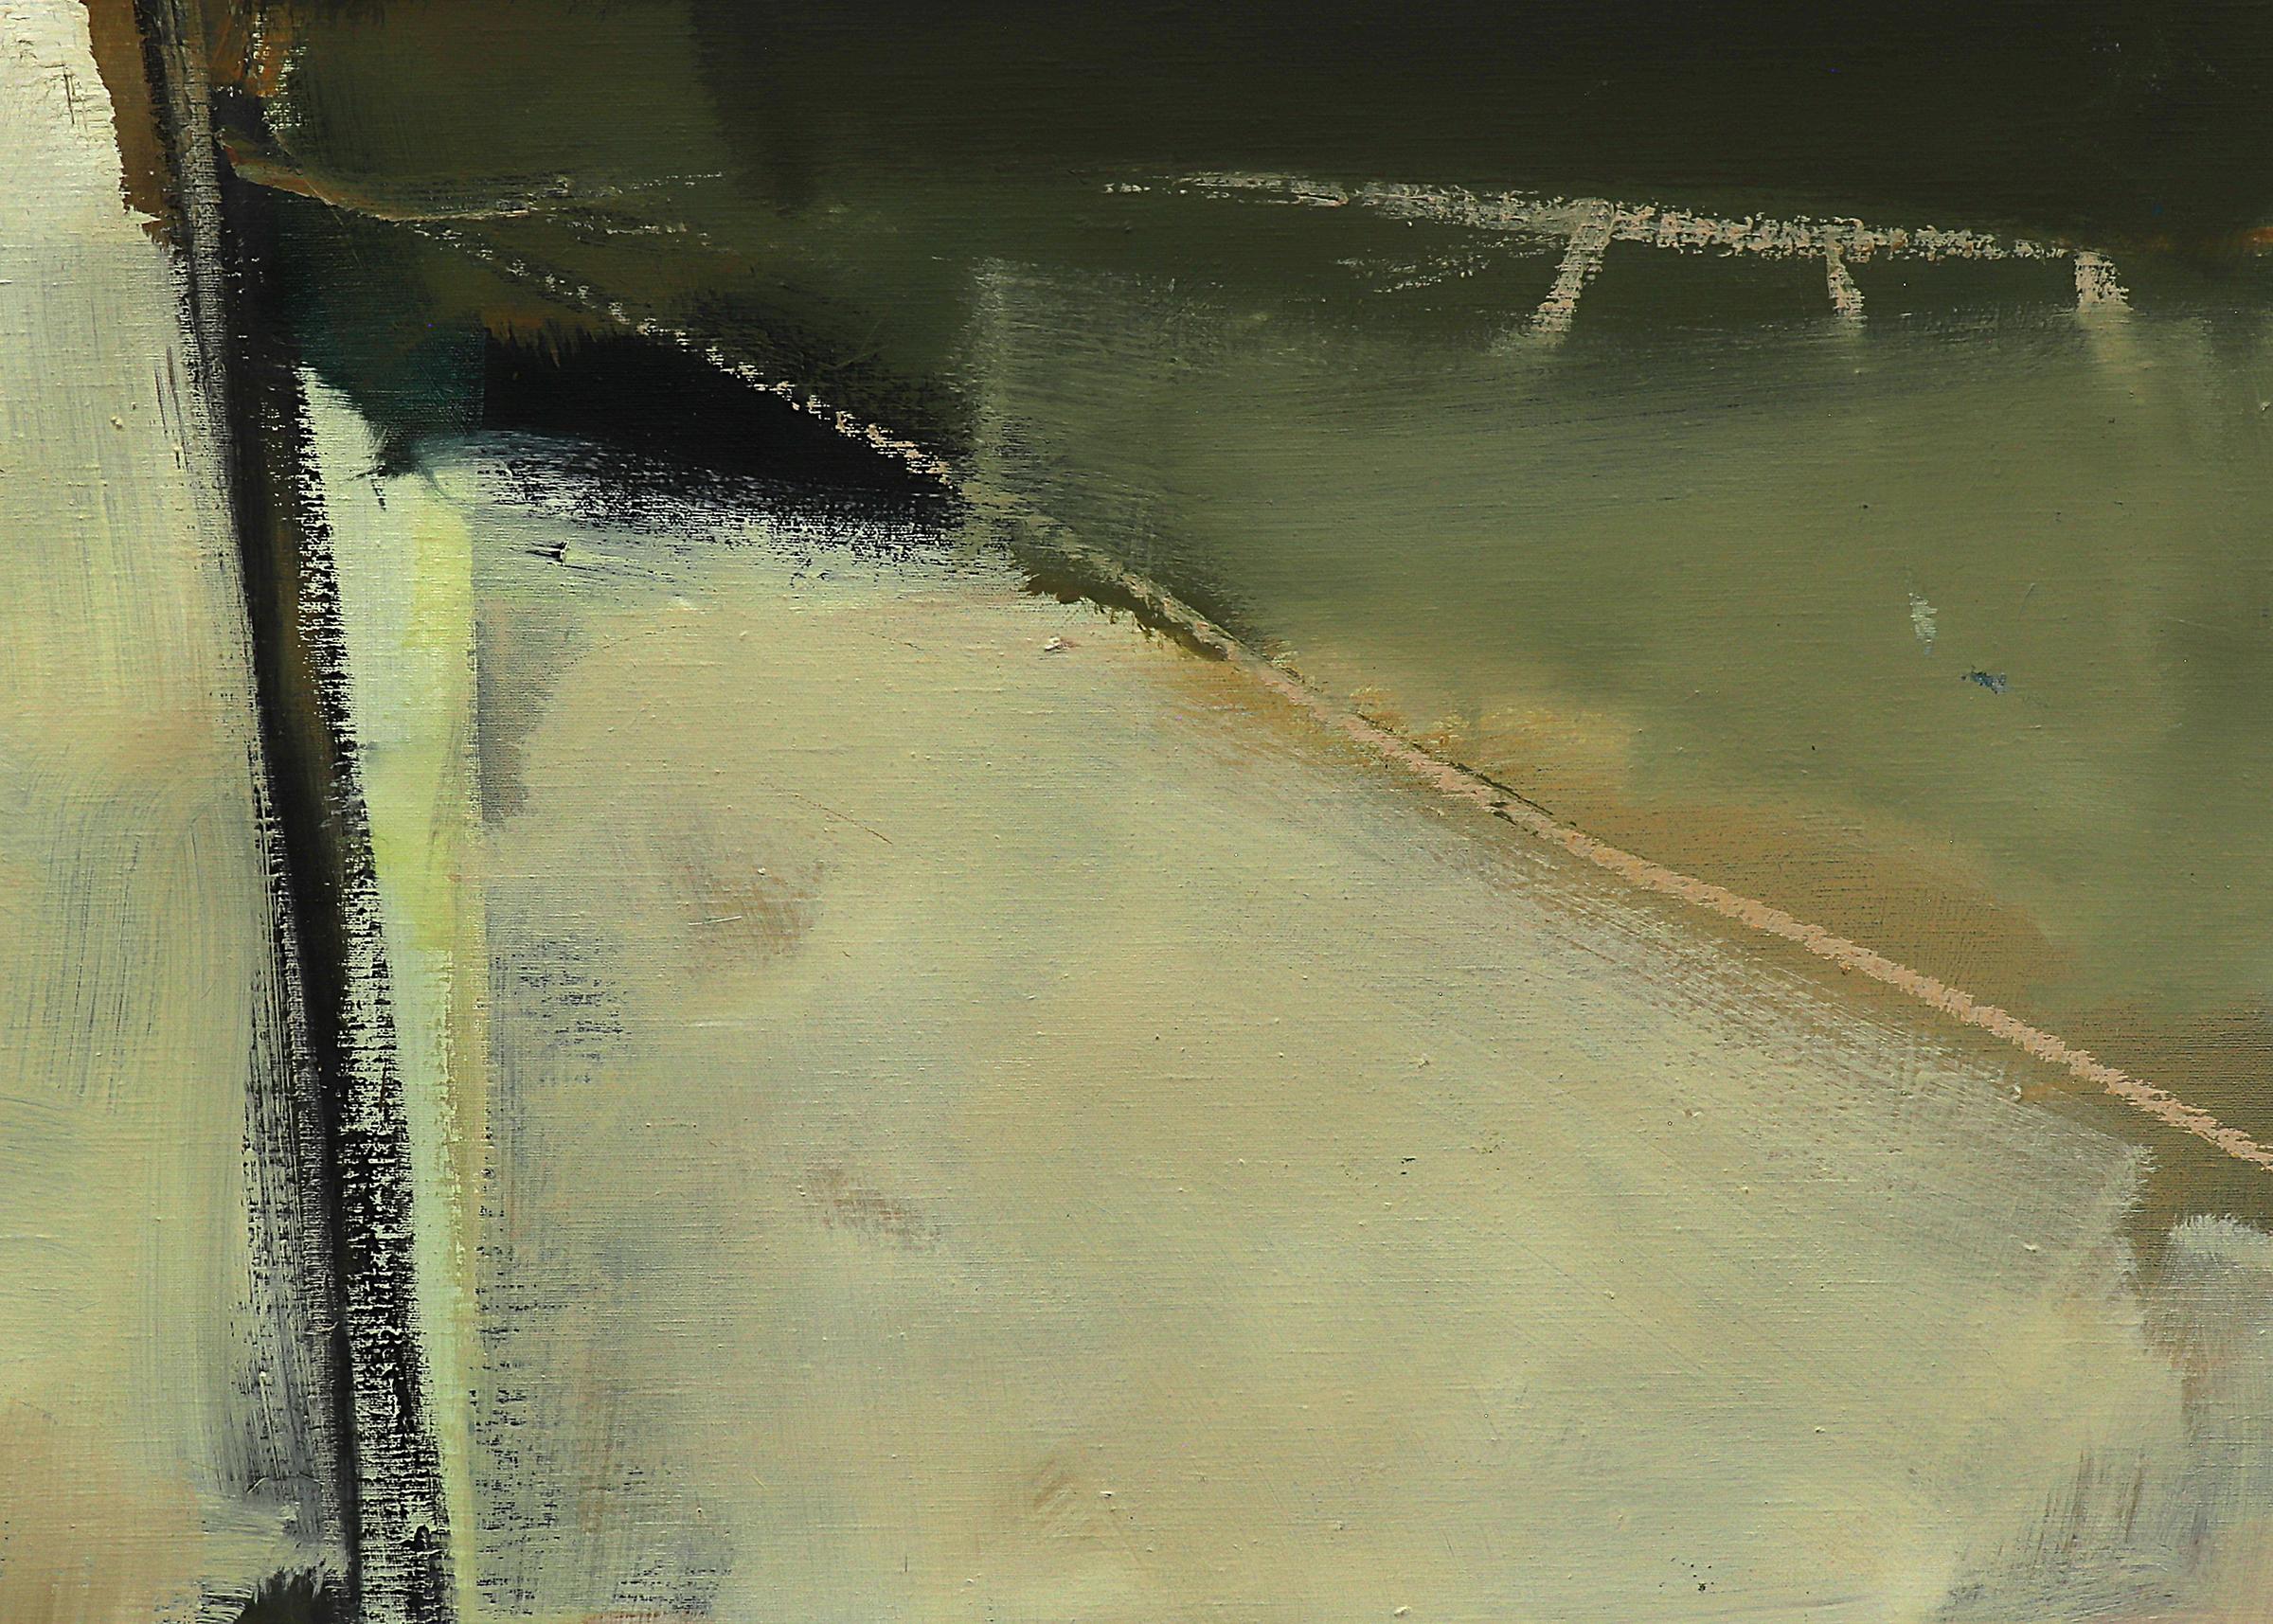 Abstraktes Original-Ölgemälde von Wilma Fiori (1929-2019) aus dem Jahr 1994. Verso vom Künstler signiert und datiert. Großformatiges abstraktes Gemälde im Querformat in Grün-, Gold-, Grau- und Blautönen mit einem Hauch von Rot und Schwarz.